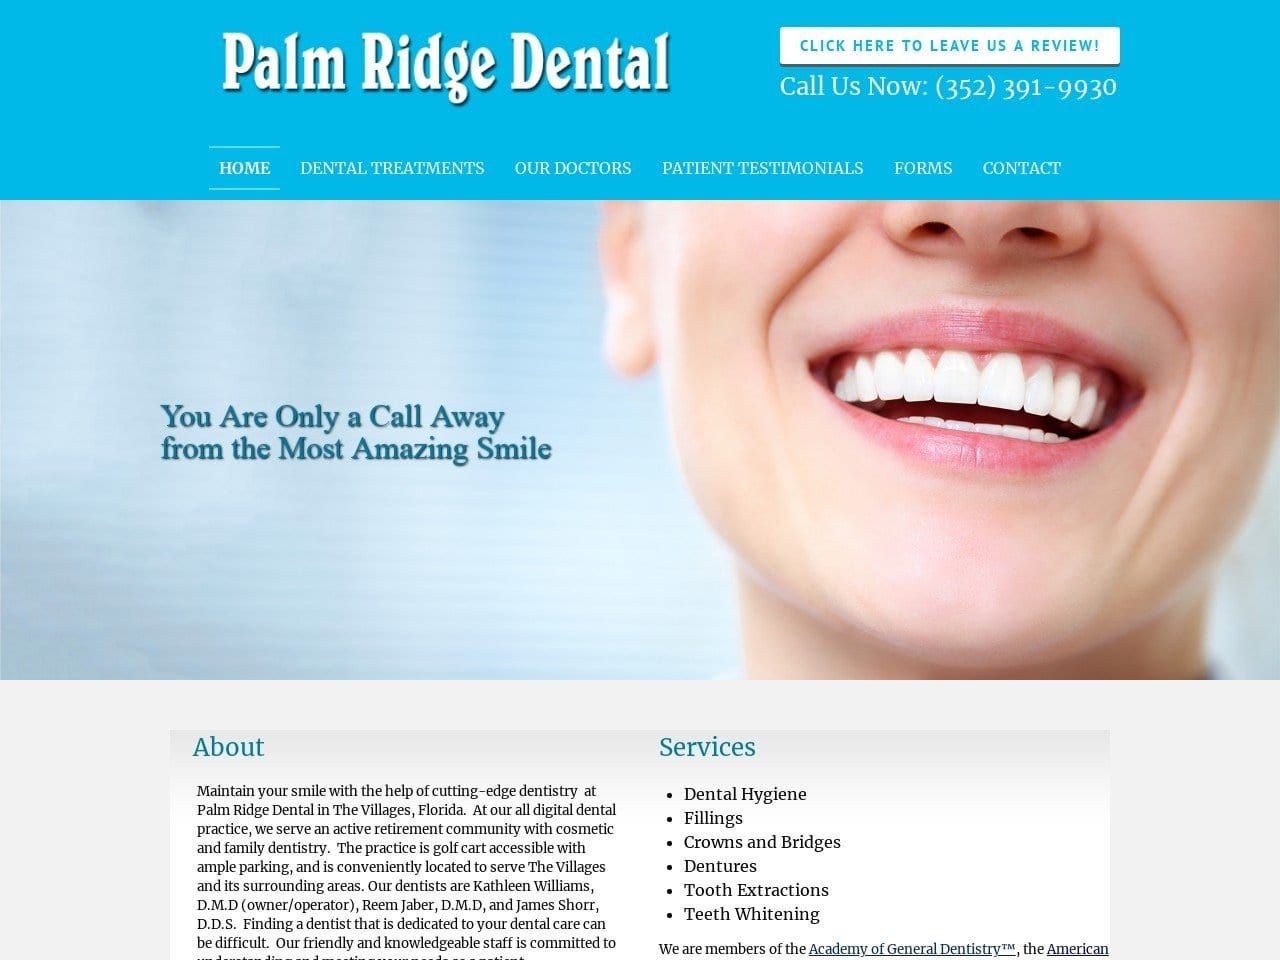 Palm Ridge Dental Website Screenshot from palmridgedental.net